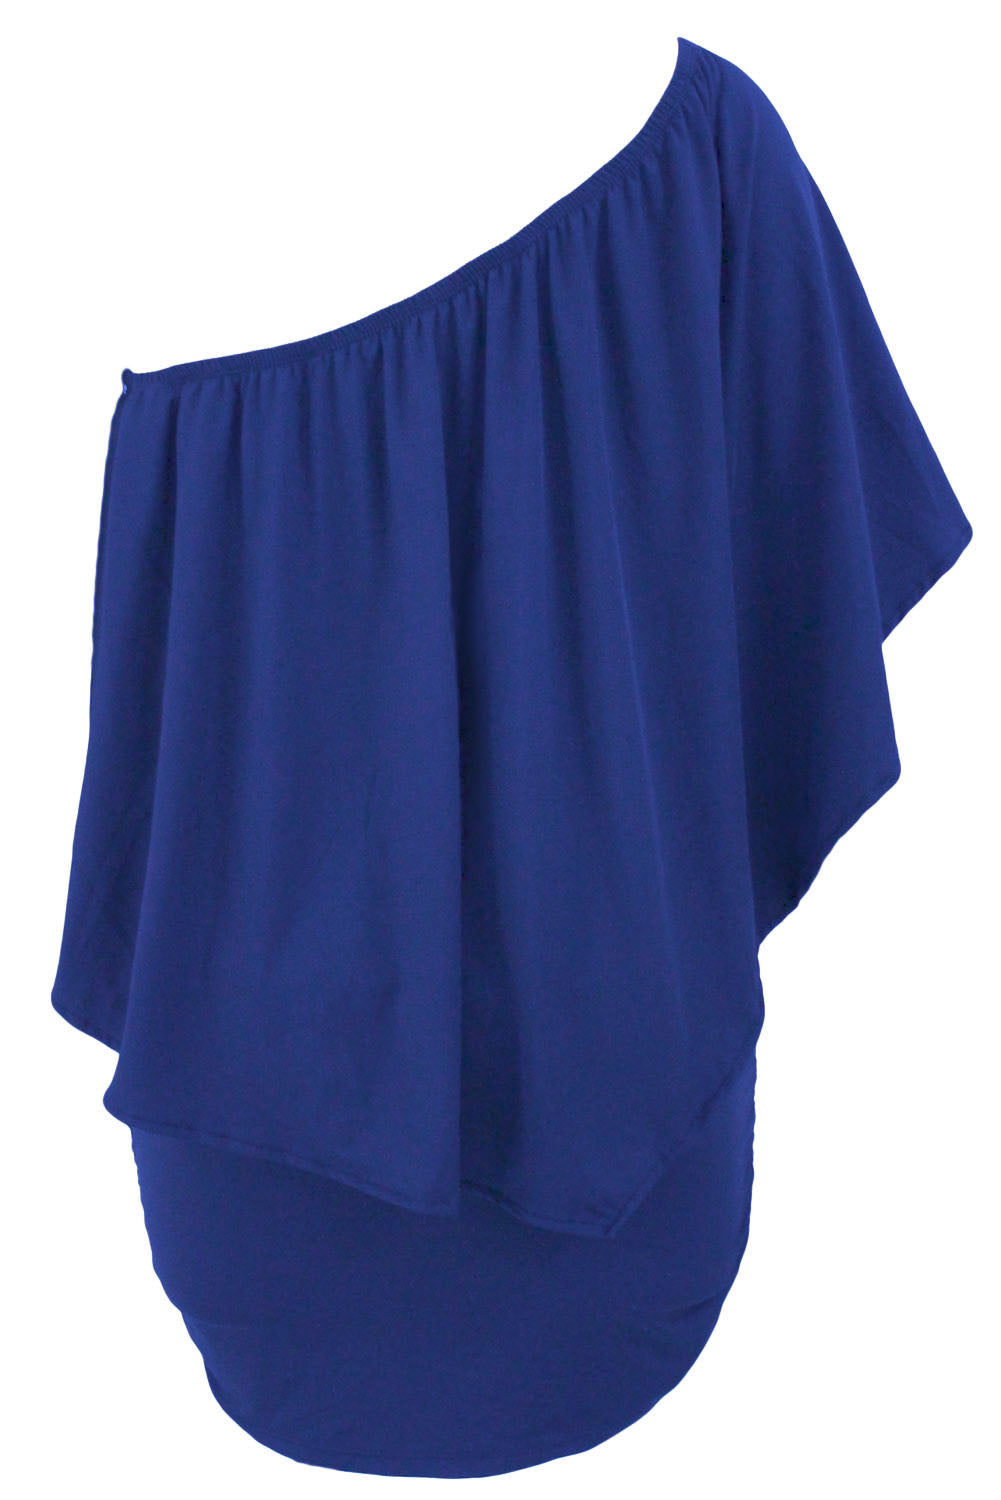 Slojevita plava mini pončo haljina s višestrukim odijevanjem